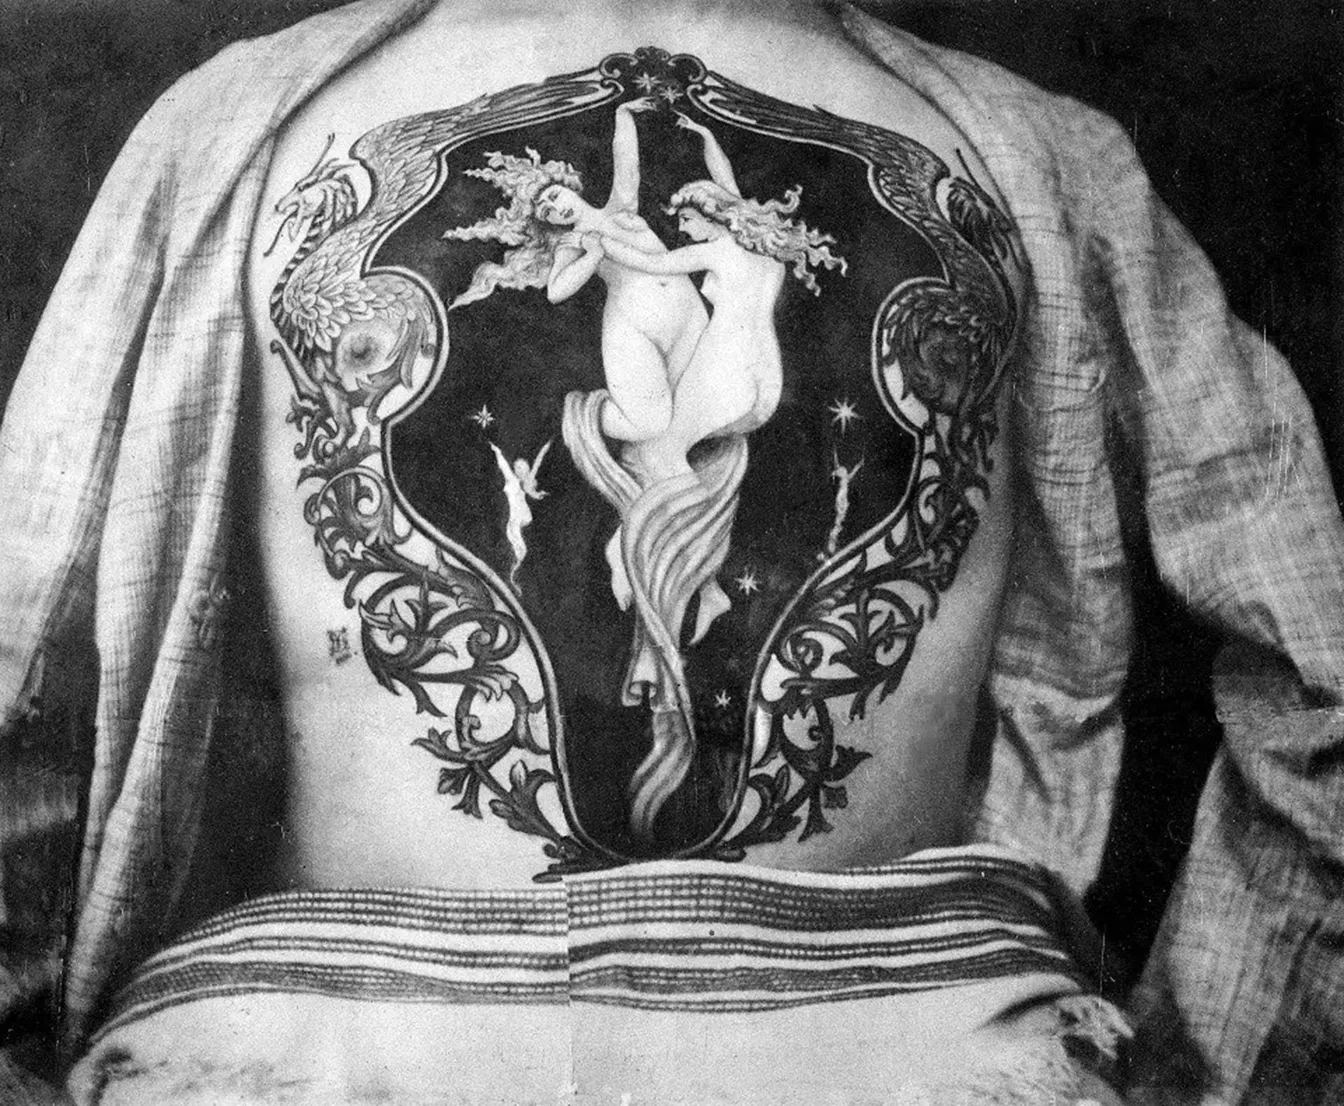 L'art del tatuatge de Sutherland Macdonald